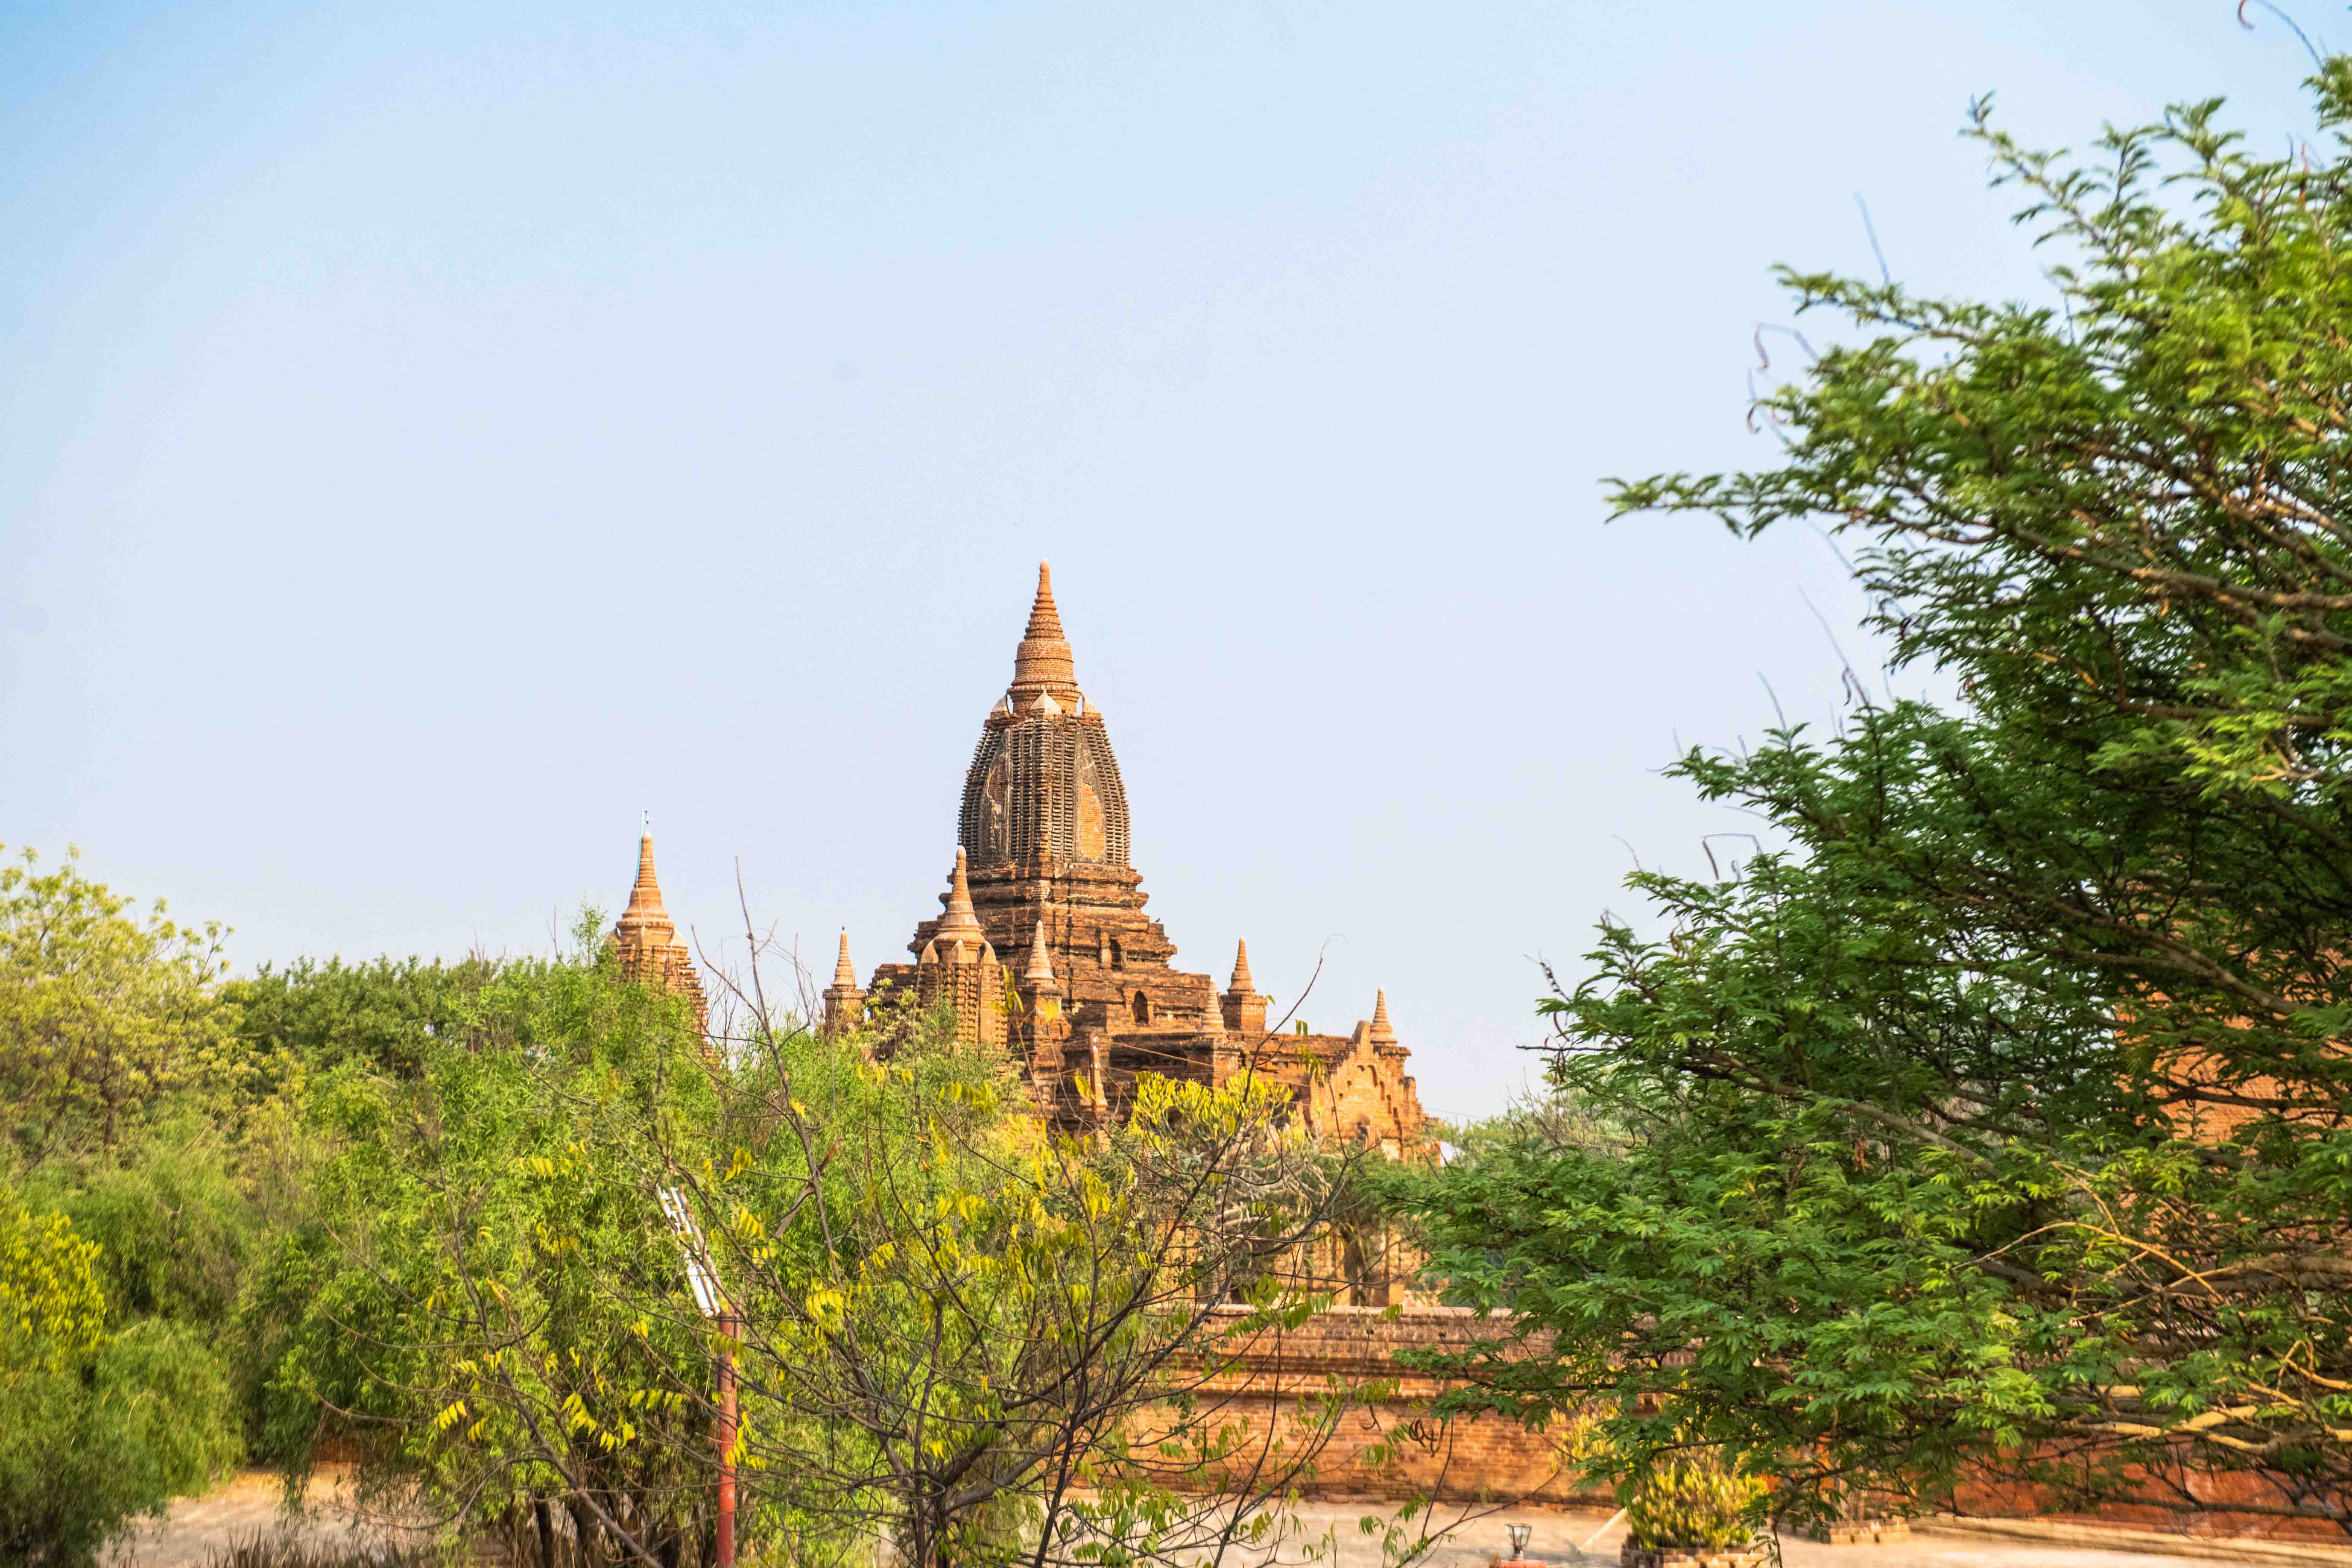 缅甸最奇葩的佛塔,佛塔塔尖像一个大钟,塔内还供奉了未来佛!